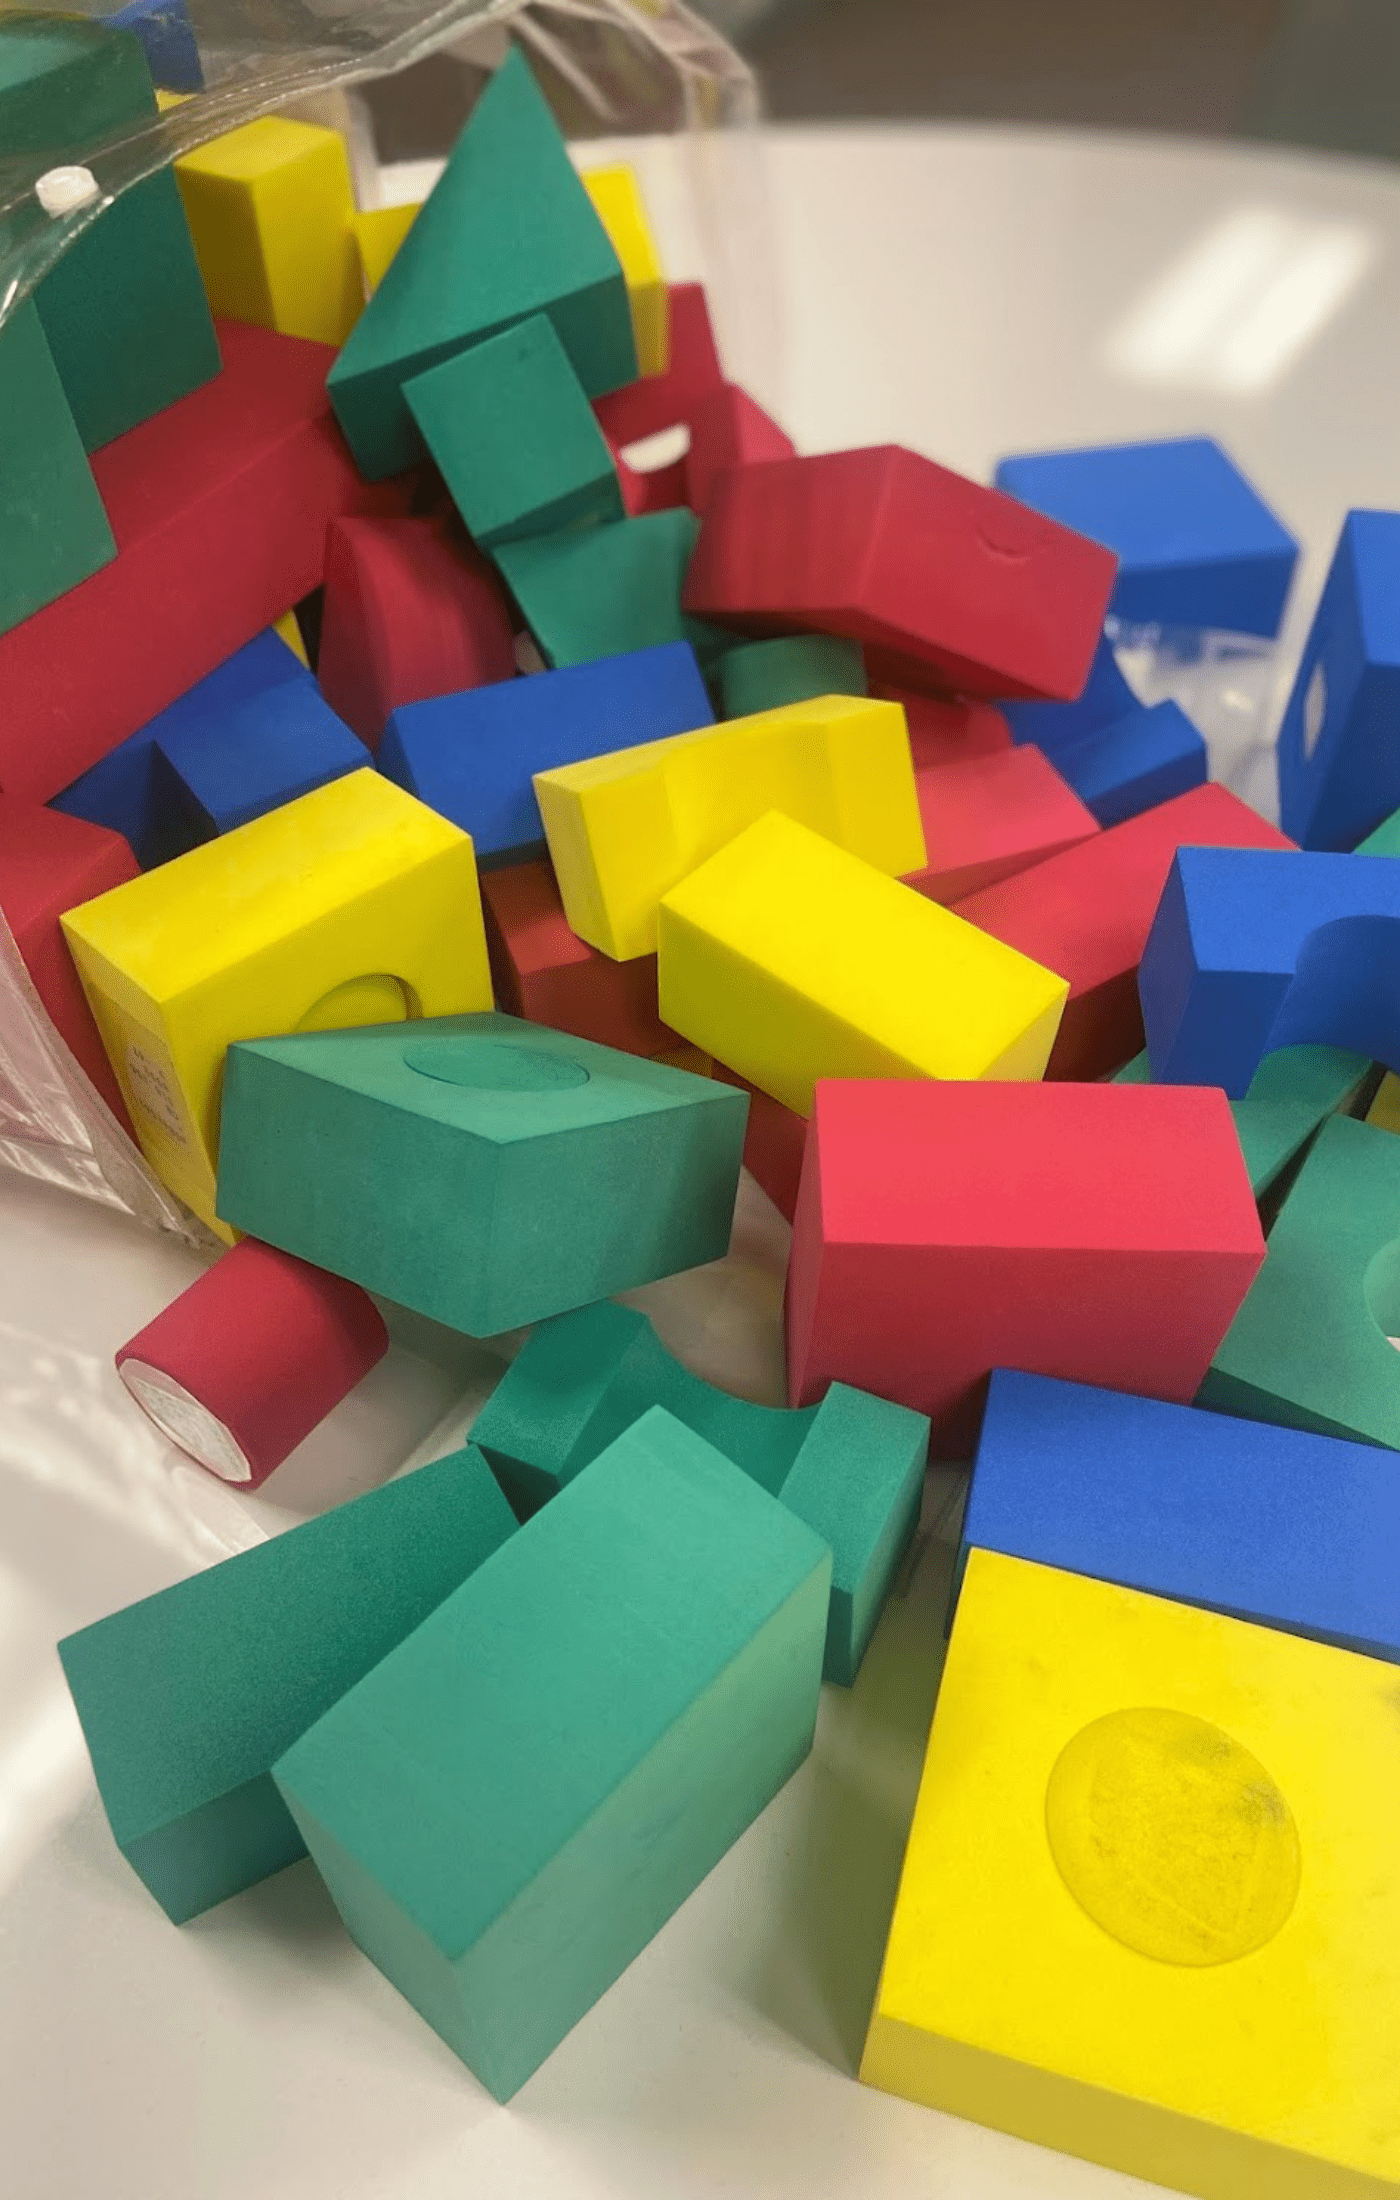 Kindergarten sorting activities